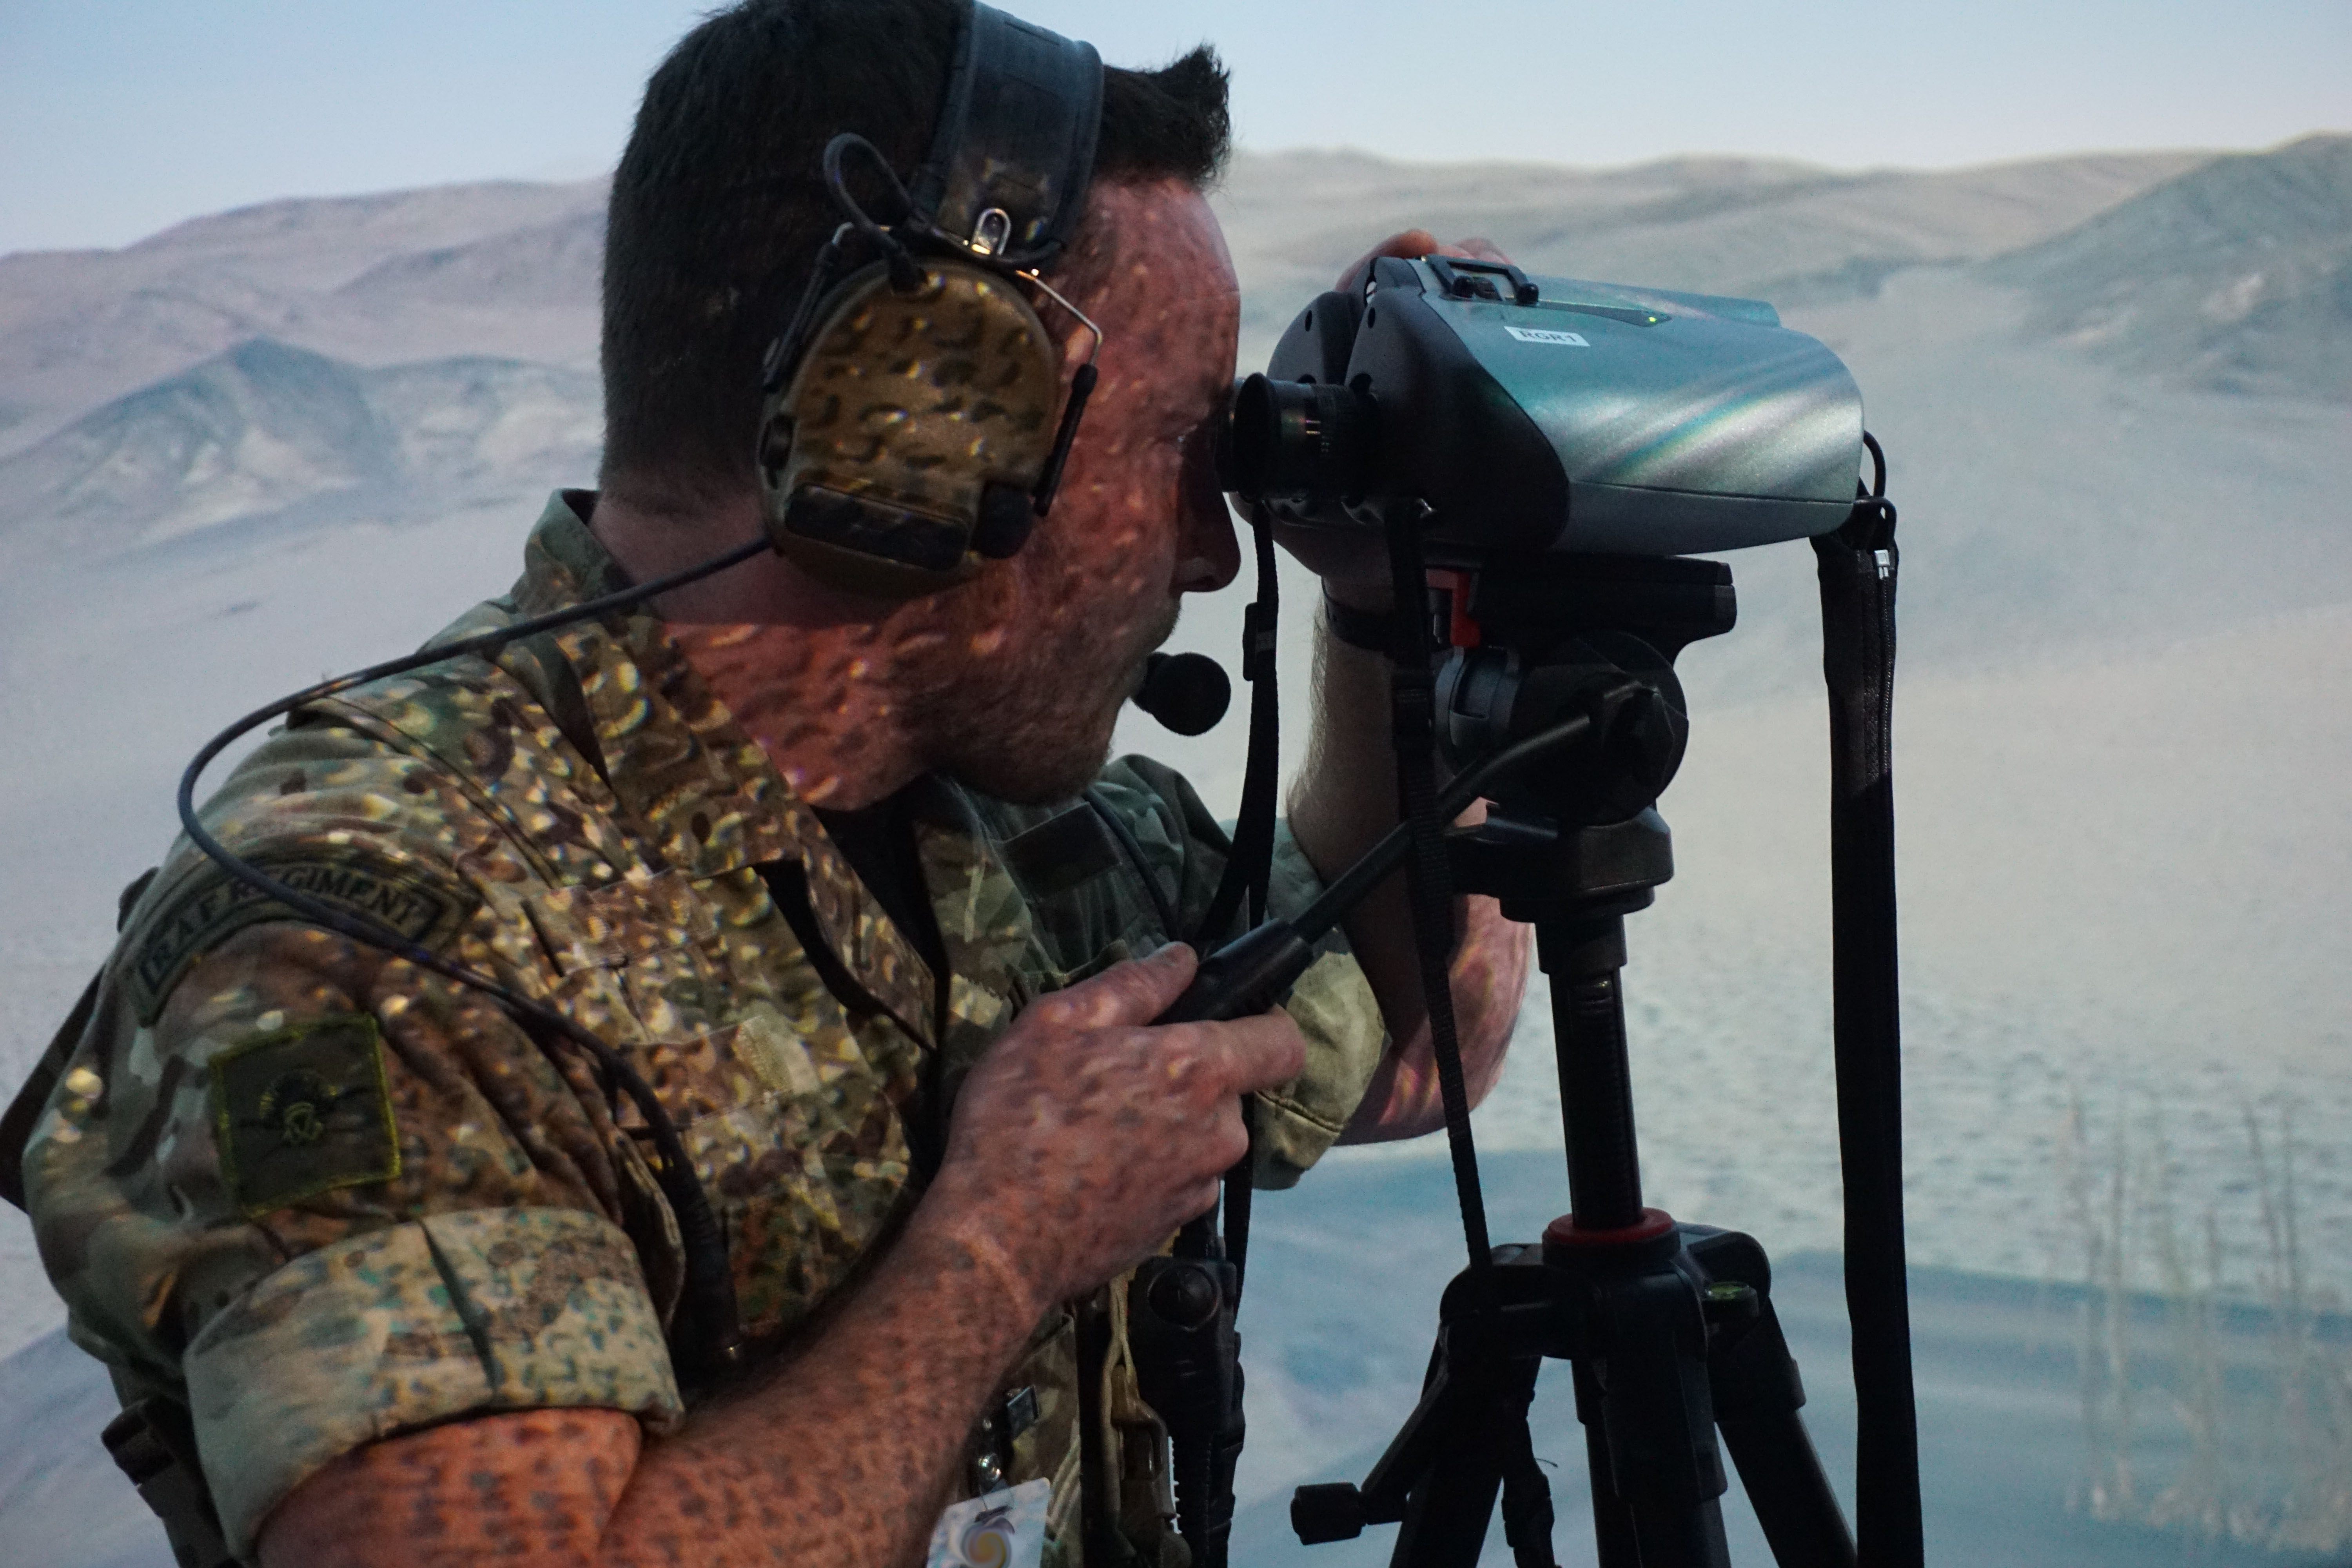 Image shows RAF aviator using binoculars and radio equipment.